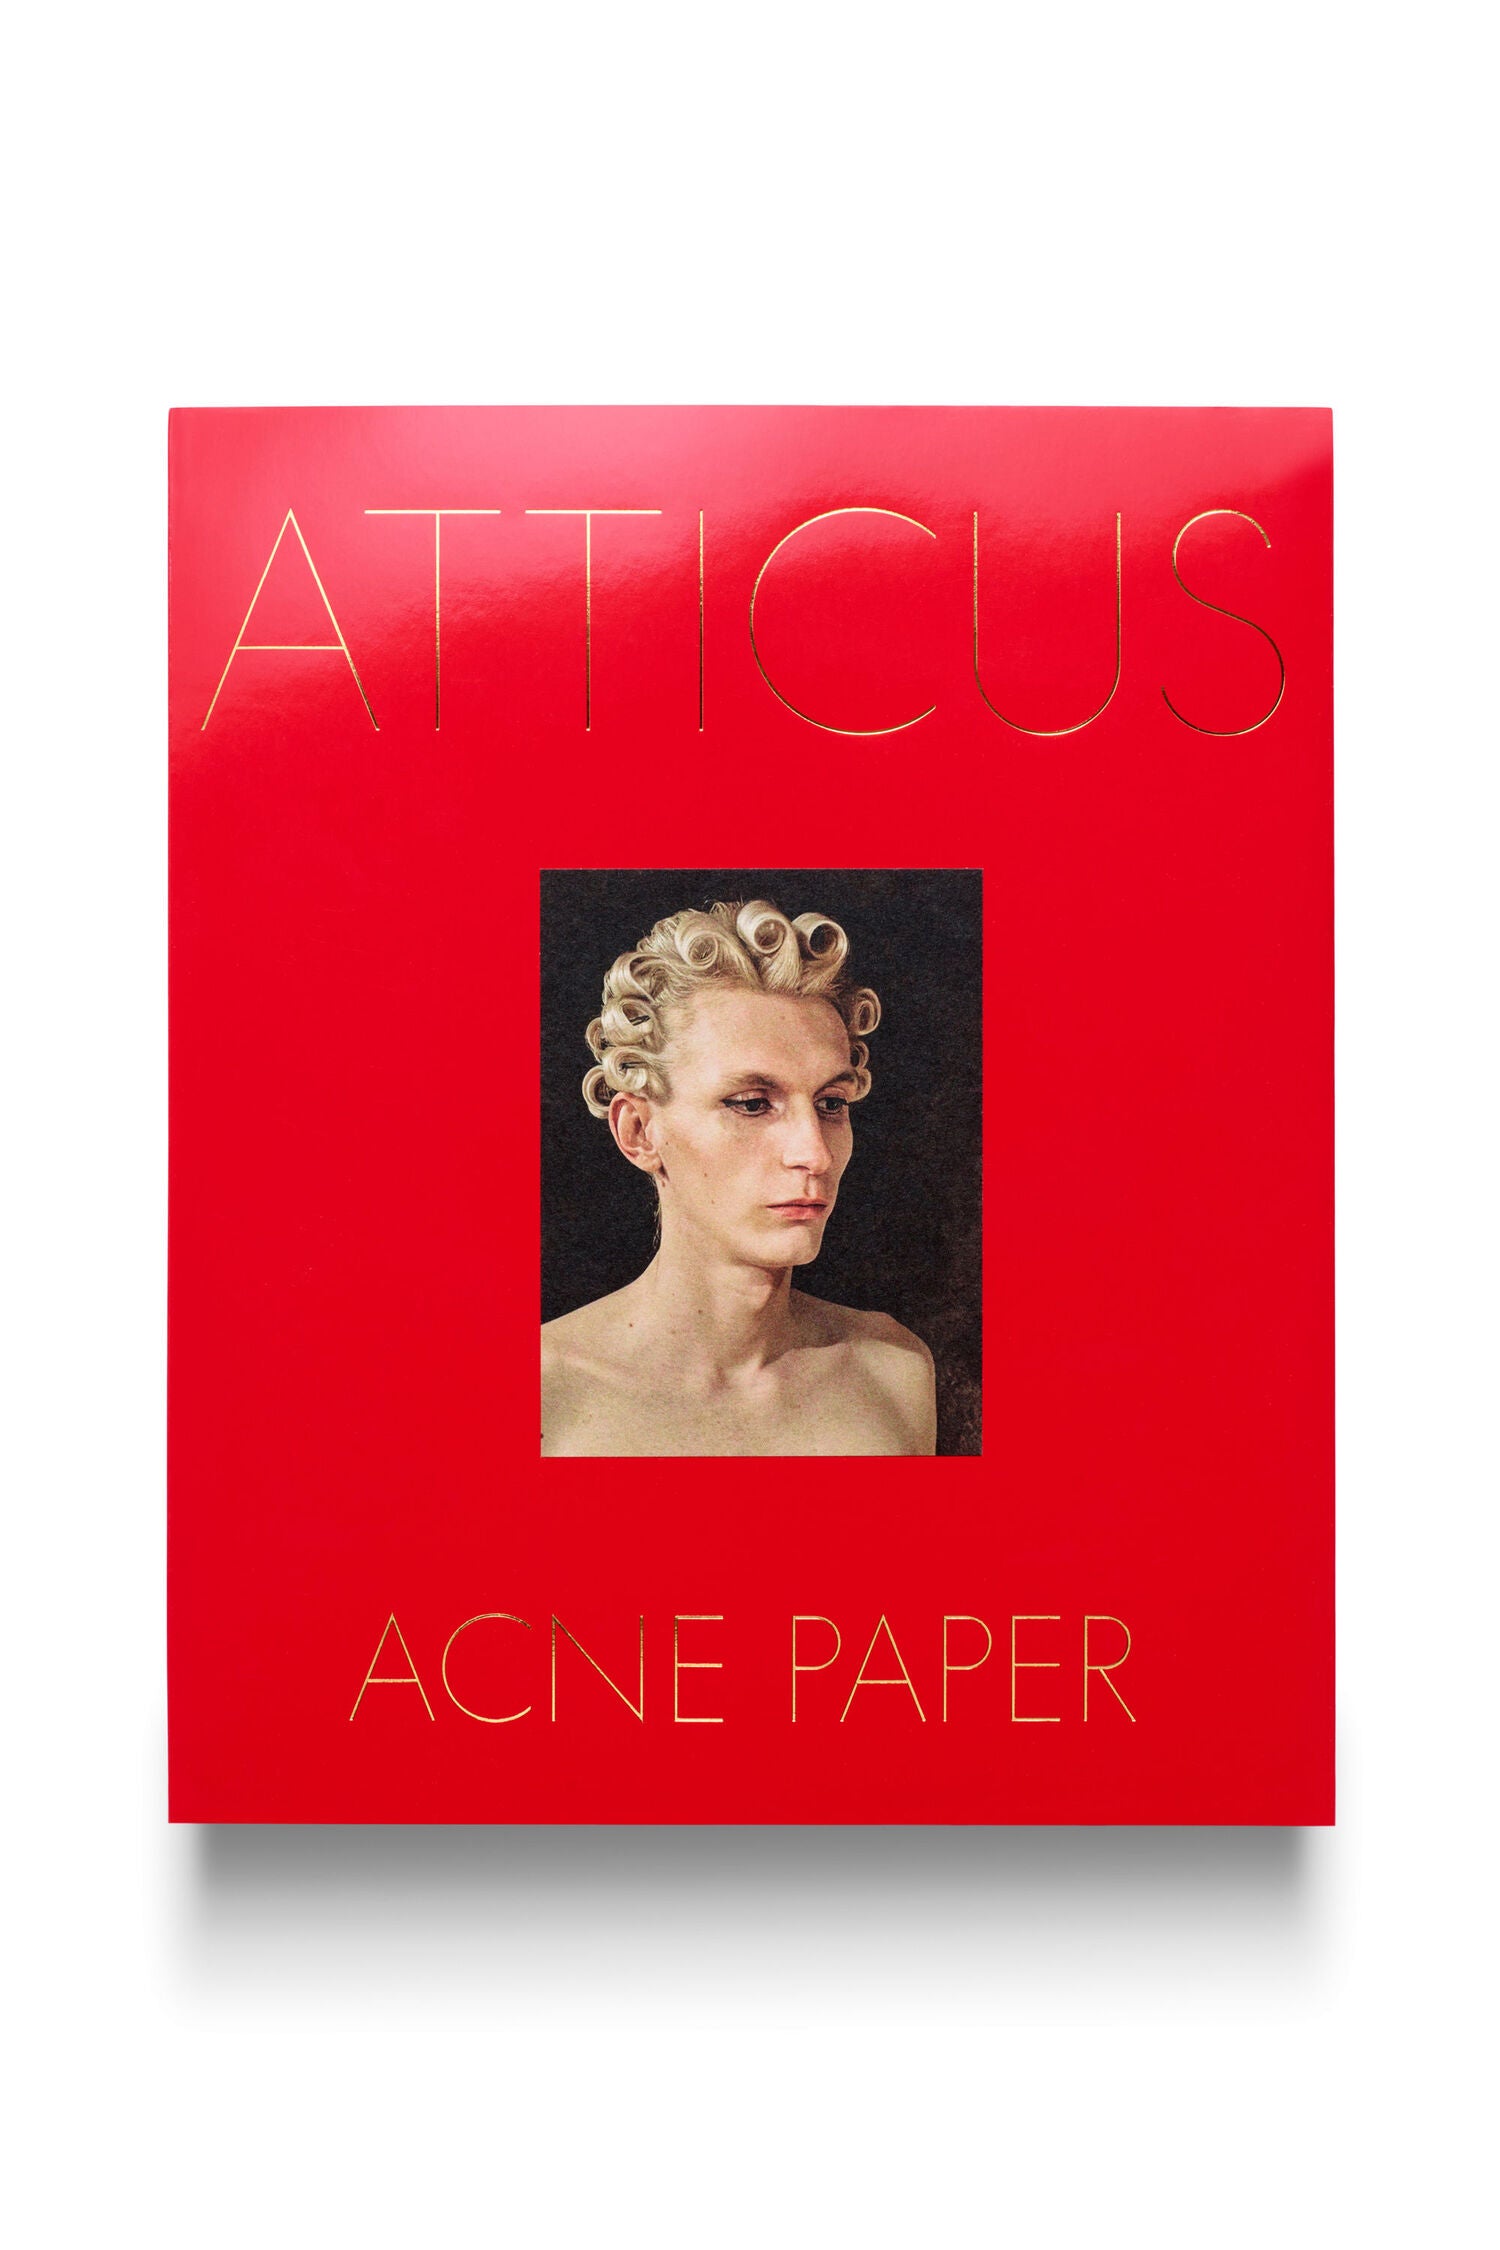 ACNE PAPER ISSUE 17 | ATTICUS